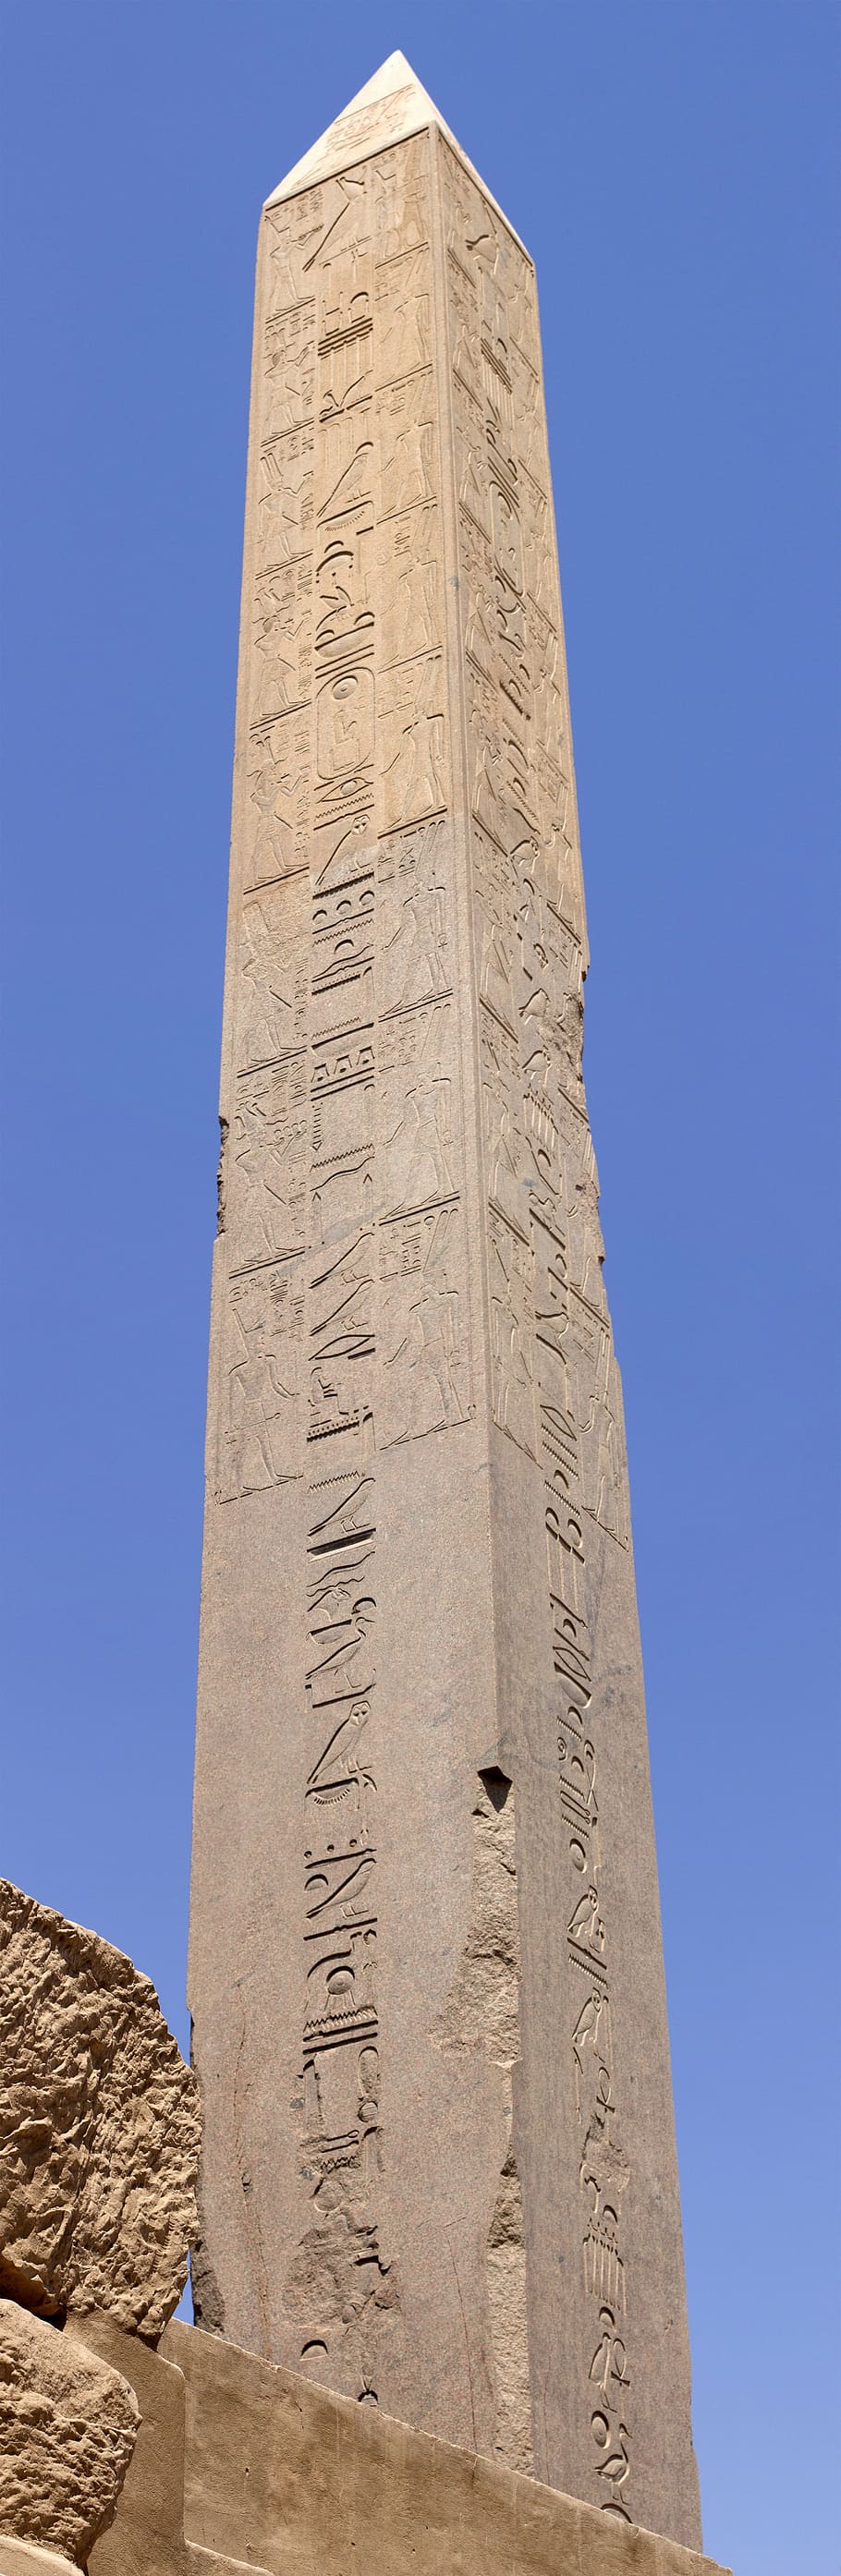 obelisco, karnak, templo, nilo, luxor, egipto, cultura, tiempos antiguos, mitología, arquitectura